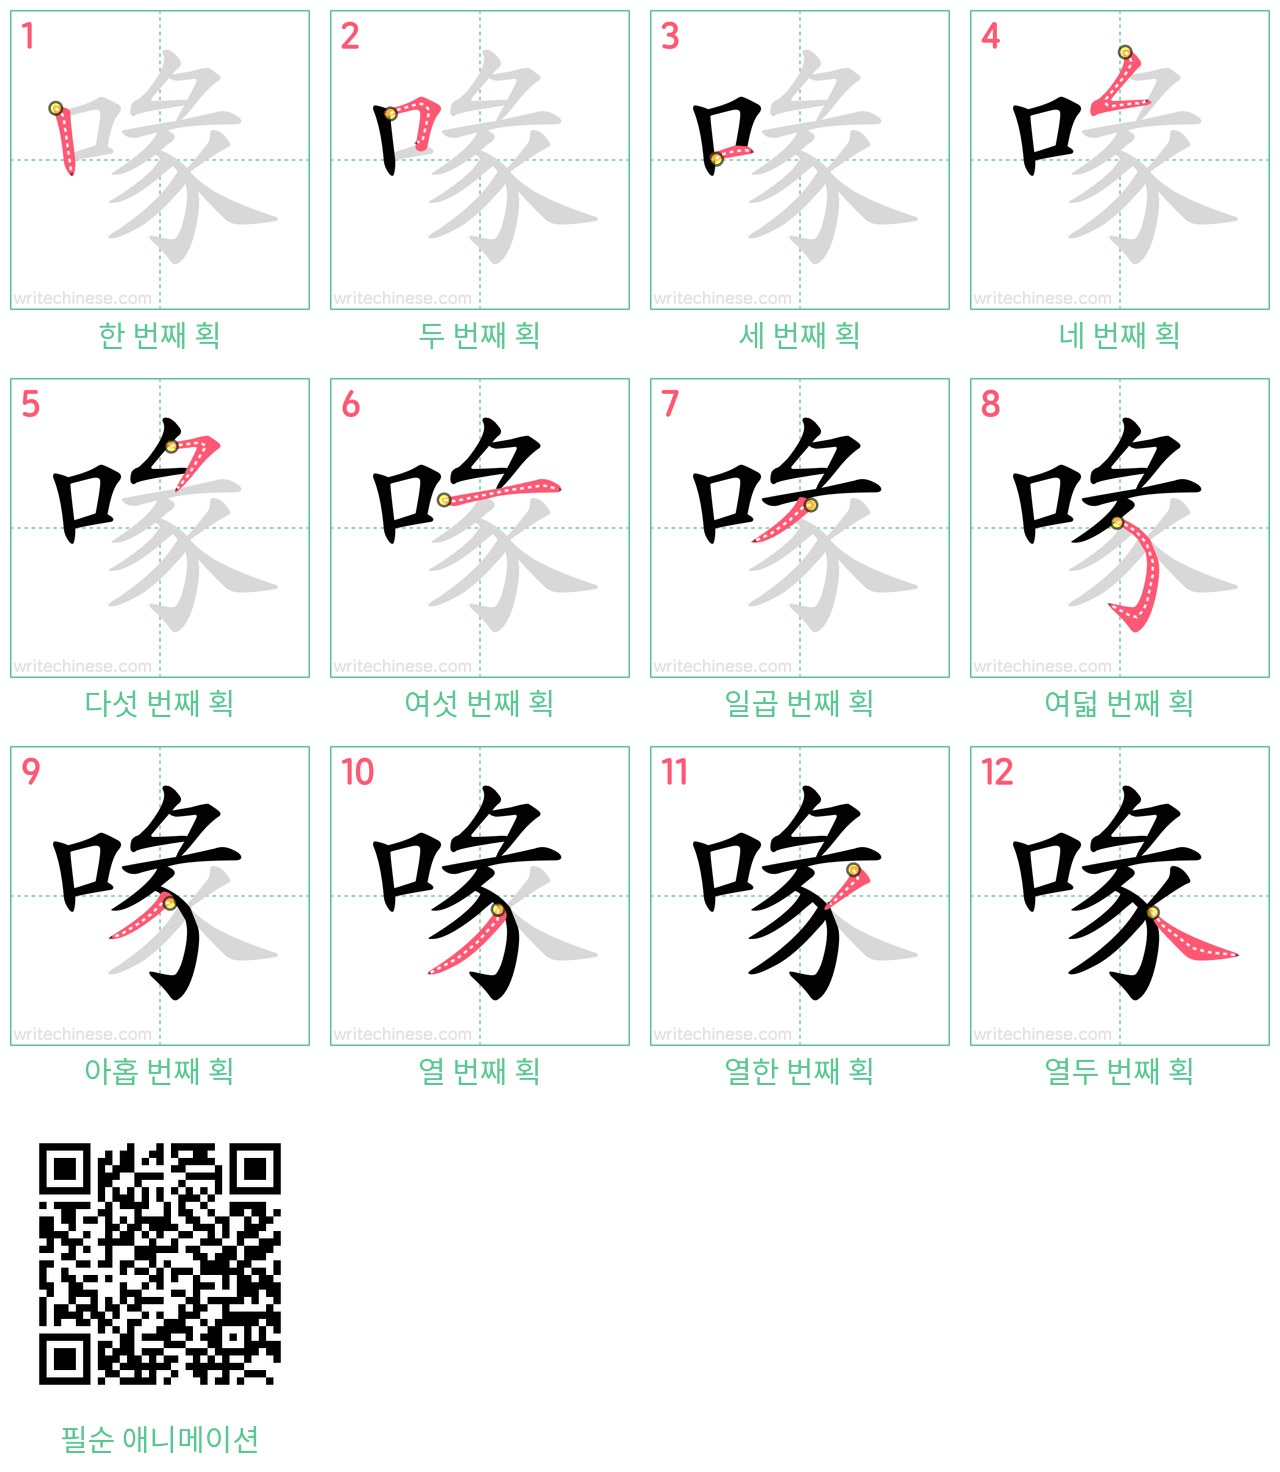 喙 step-by-step stroke order diagrams